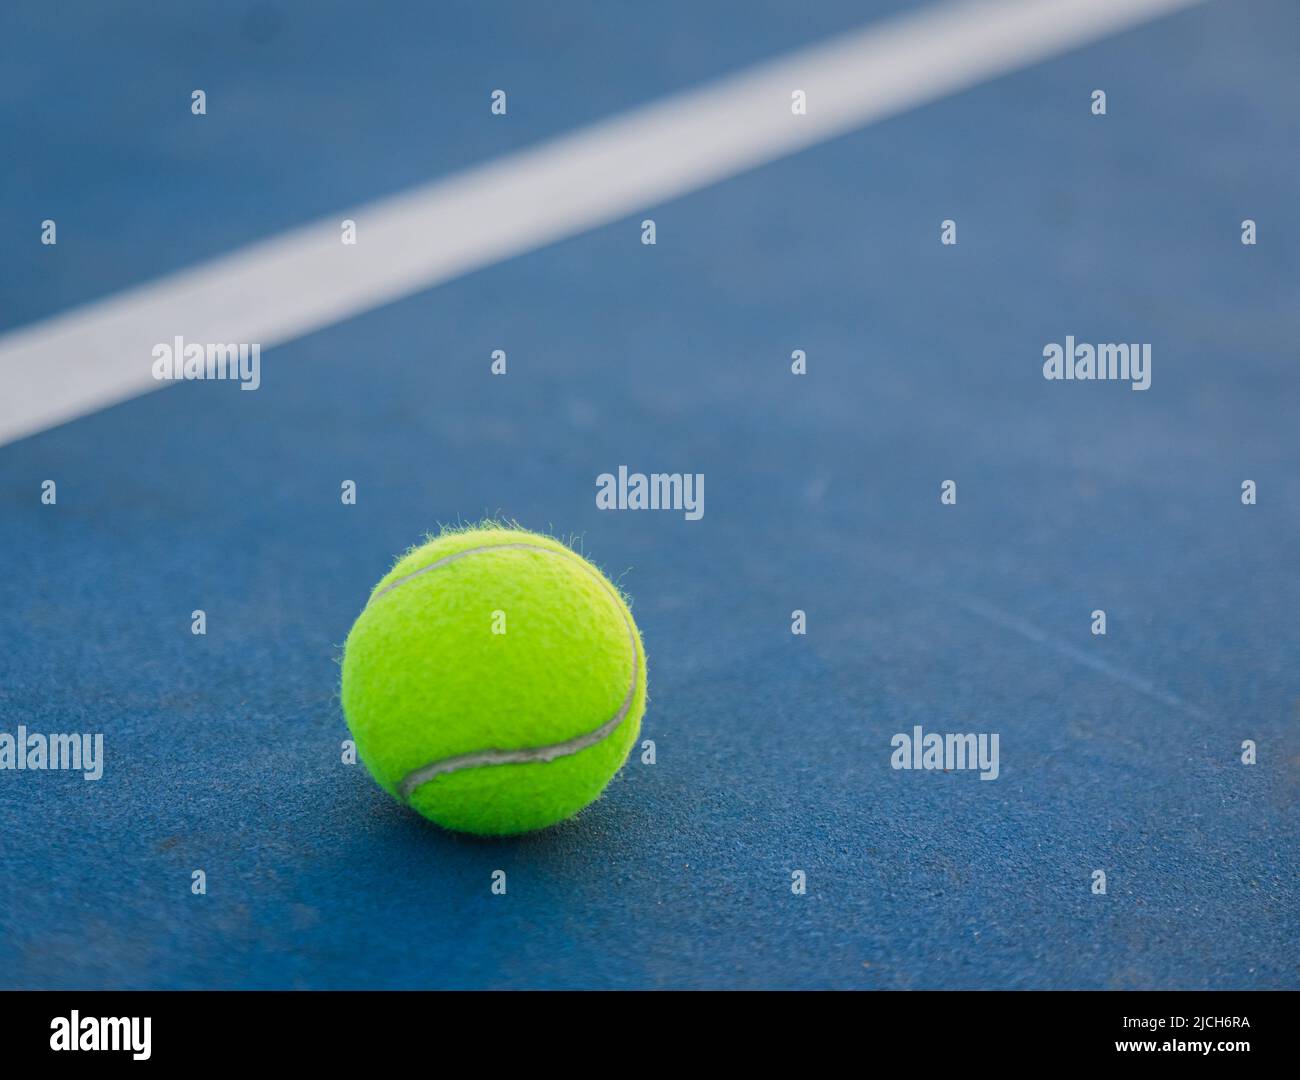 Nahaufnahme des gelben Tennisballs auf einem blauen Hartplatz. Stockfoto